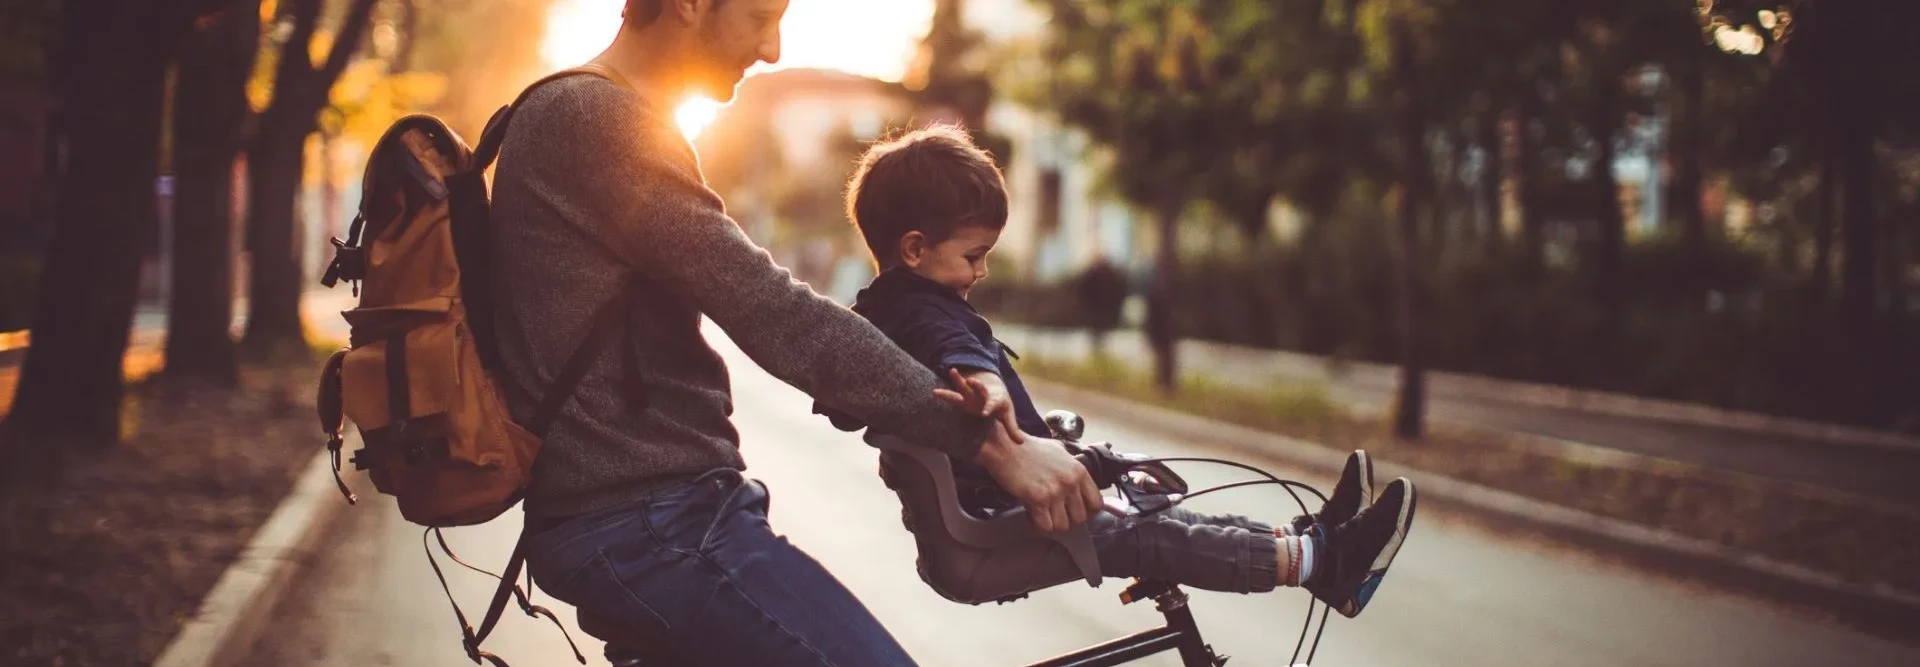 Homem e criança numa bicicleta com o pôr do sol